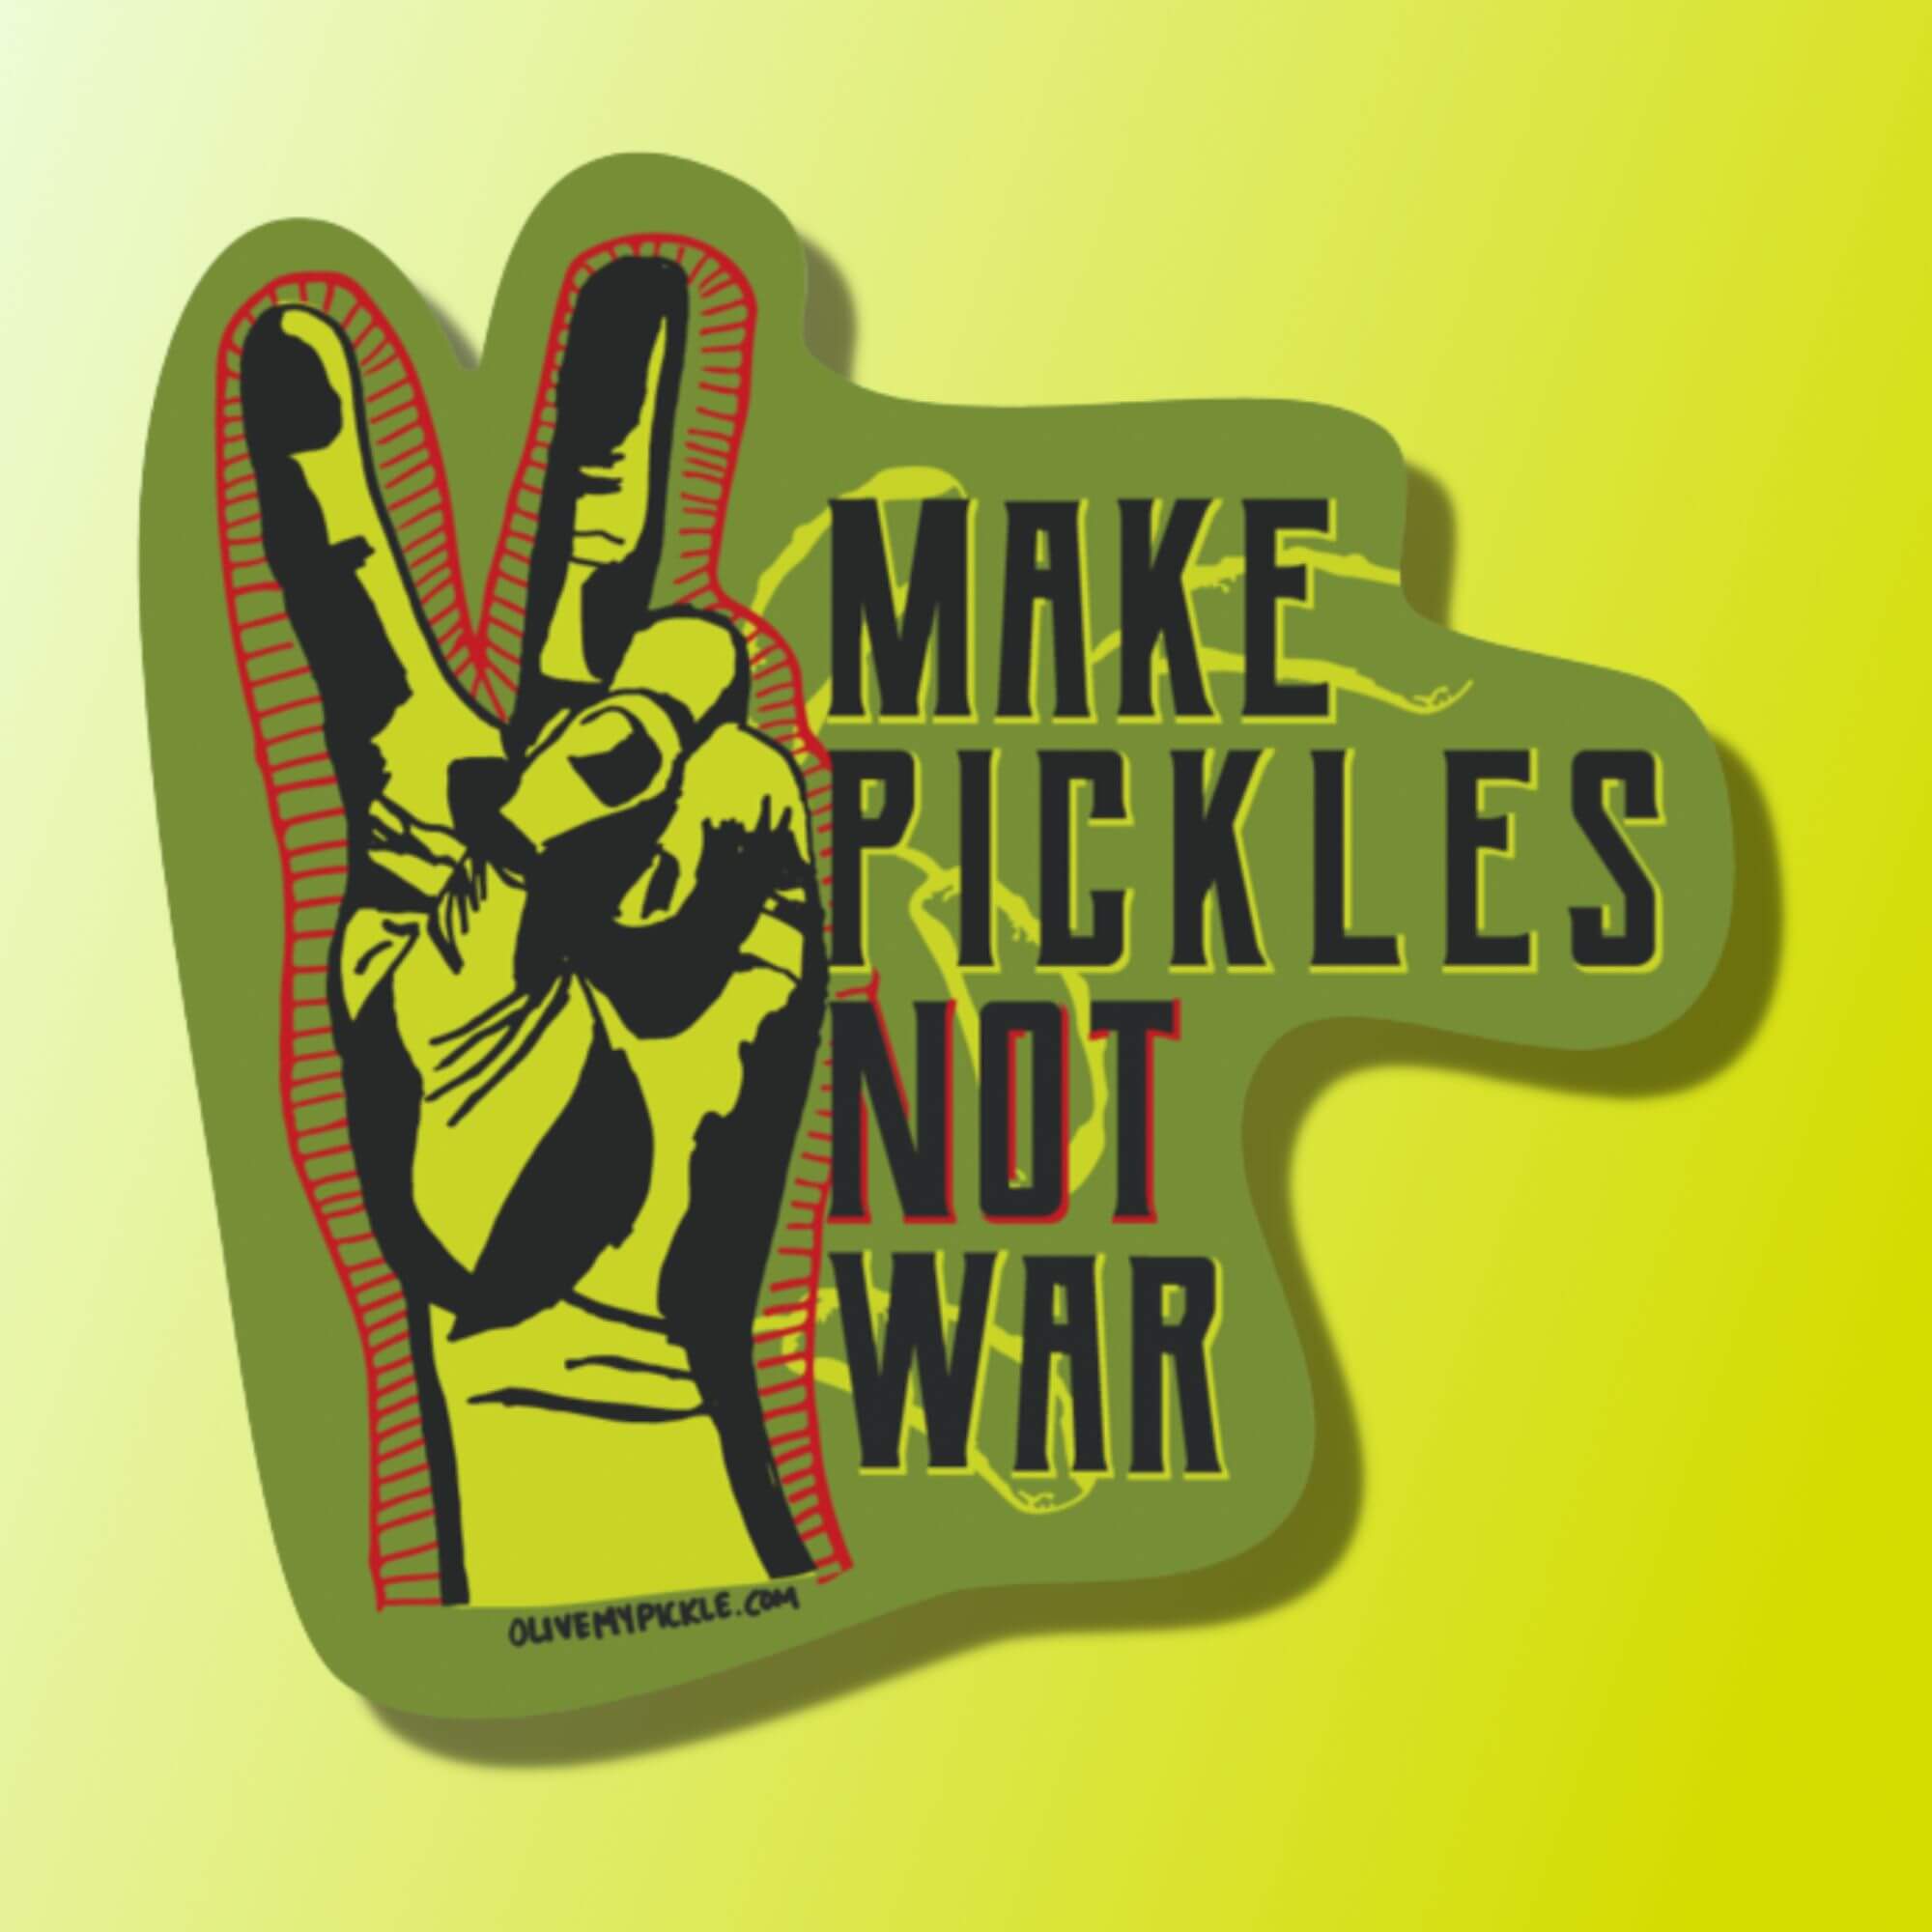 Classic Make pickles not war Sticker